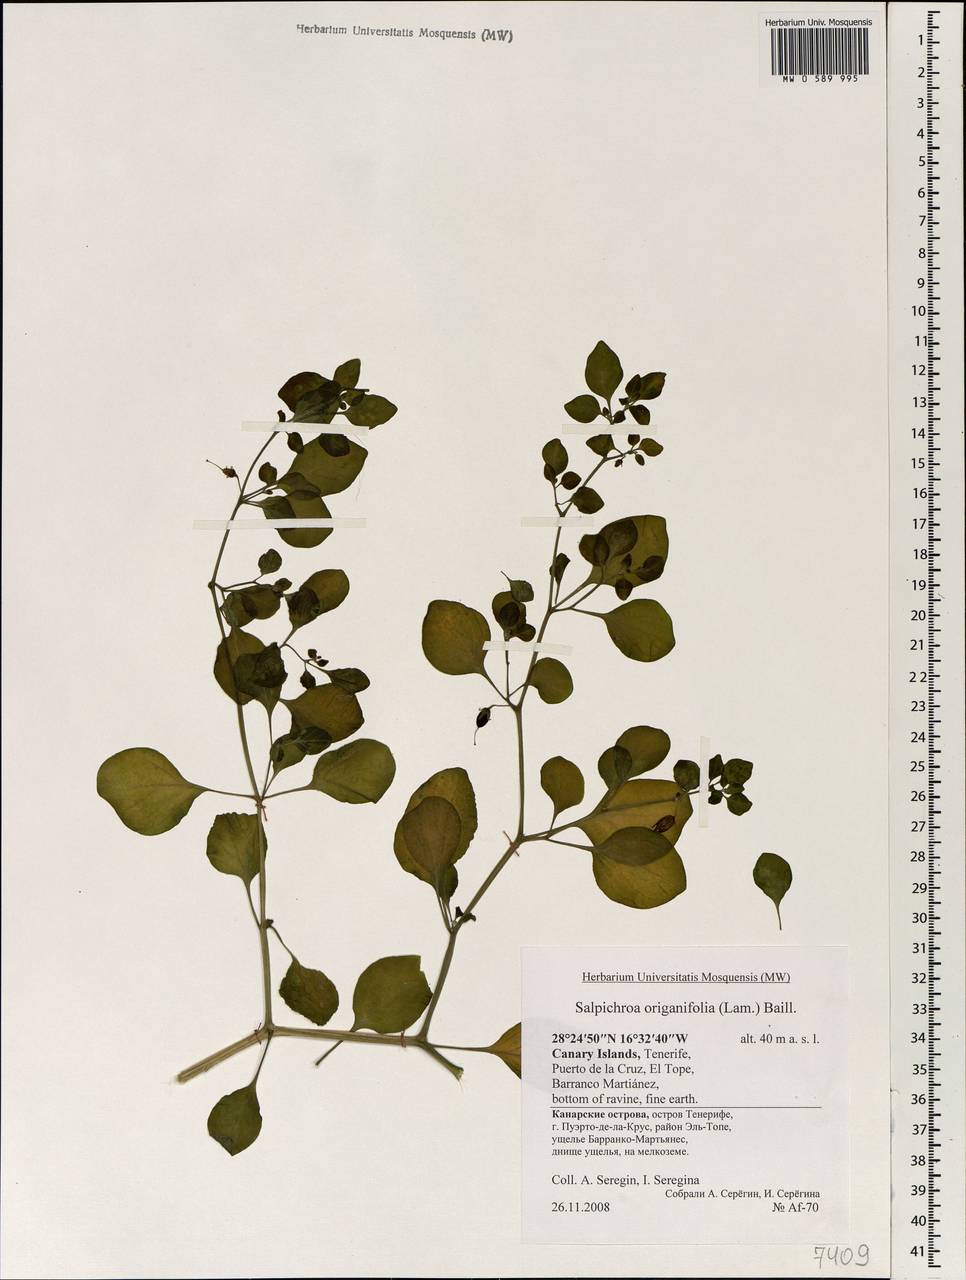 Salpichroa origanifolia (Lam.) Baillon, Africa (AFR) (Spain)